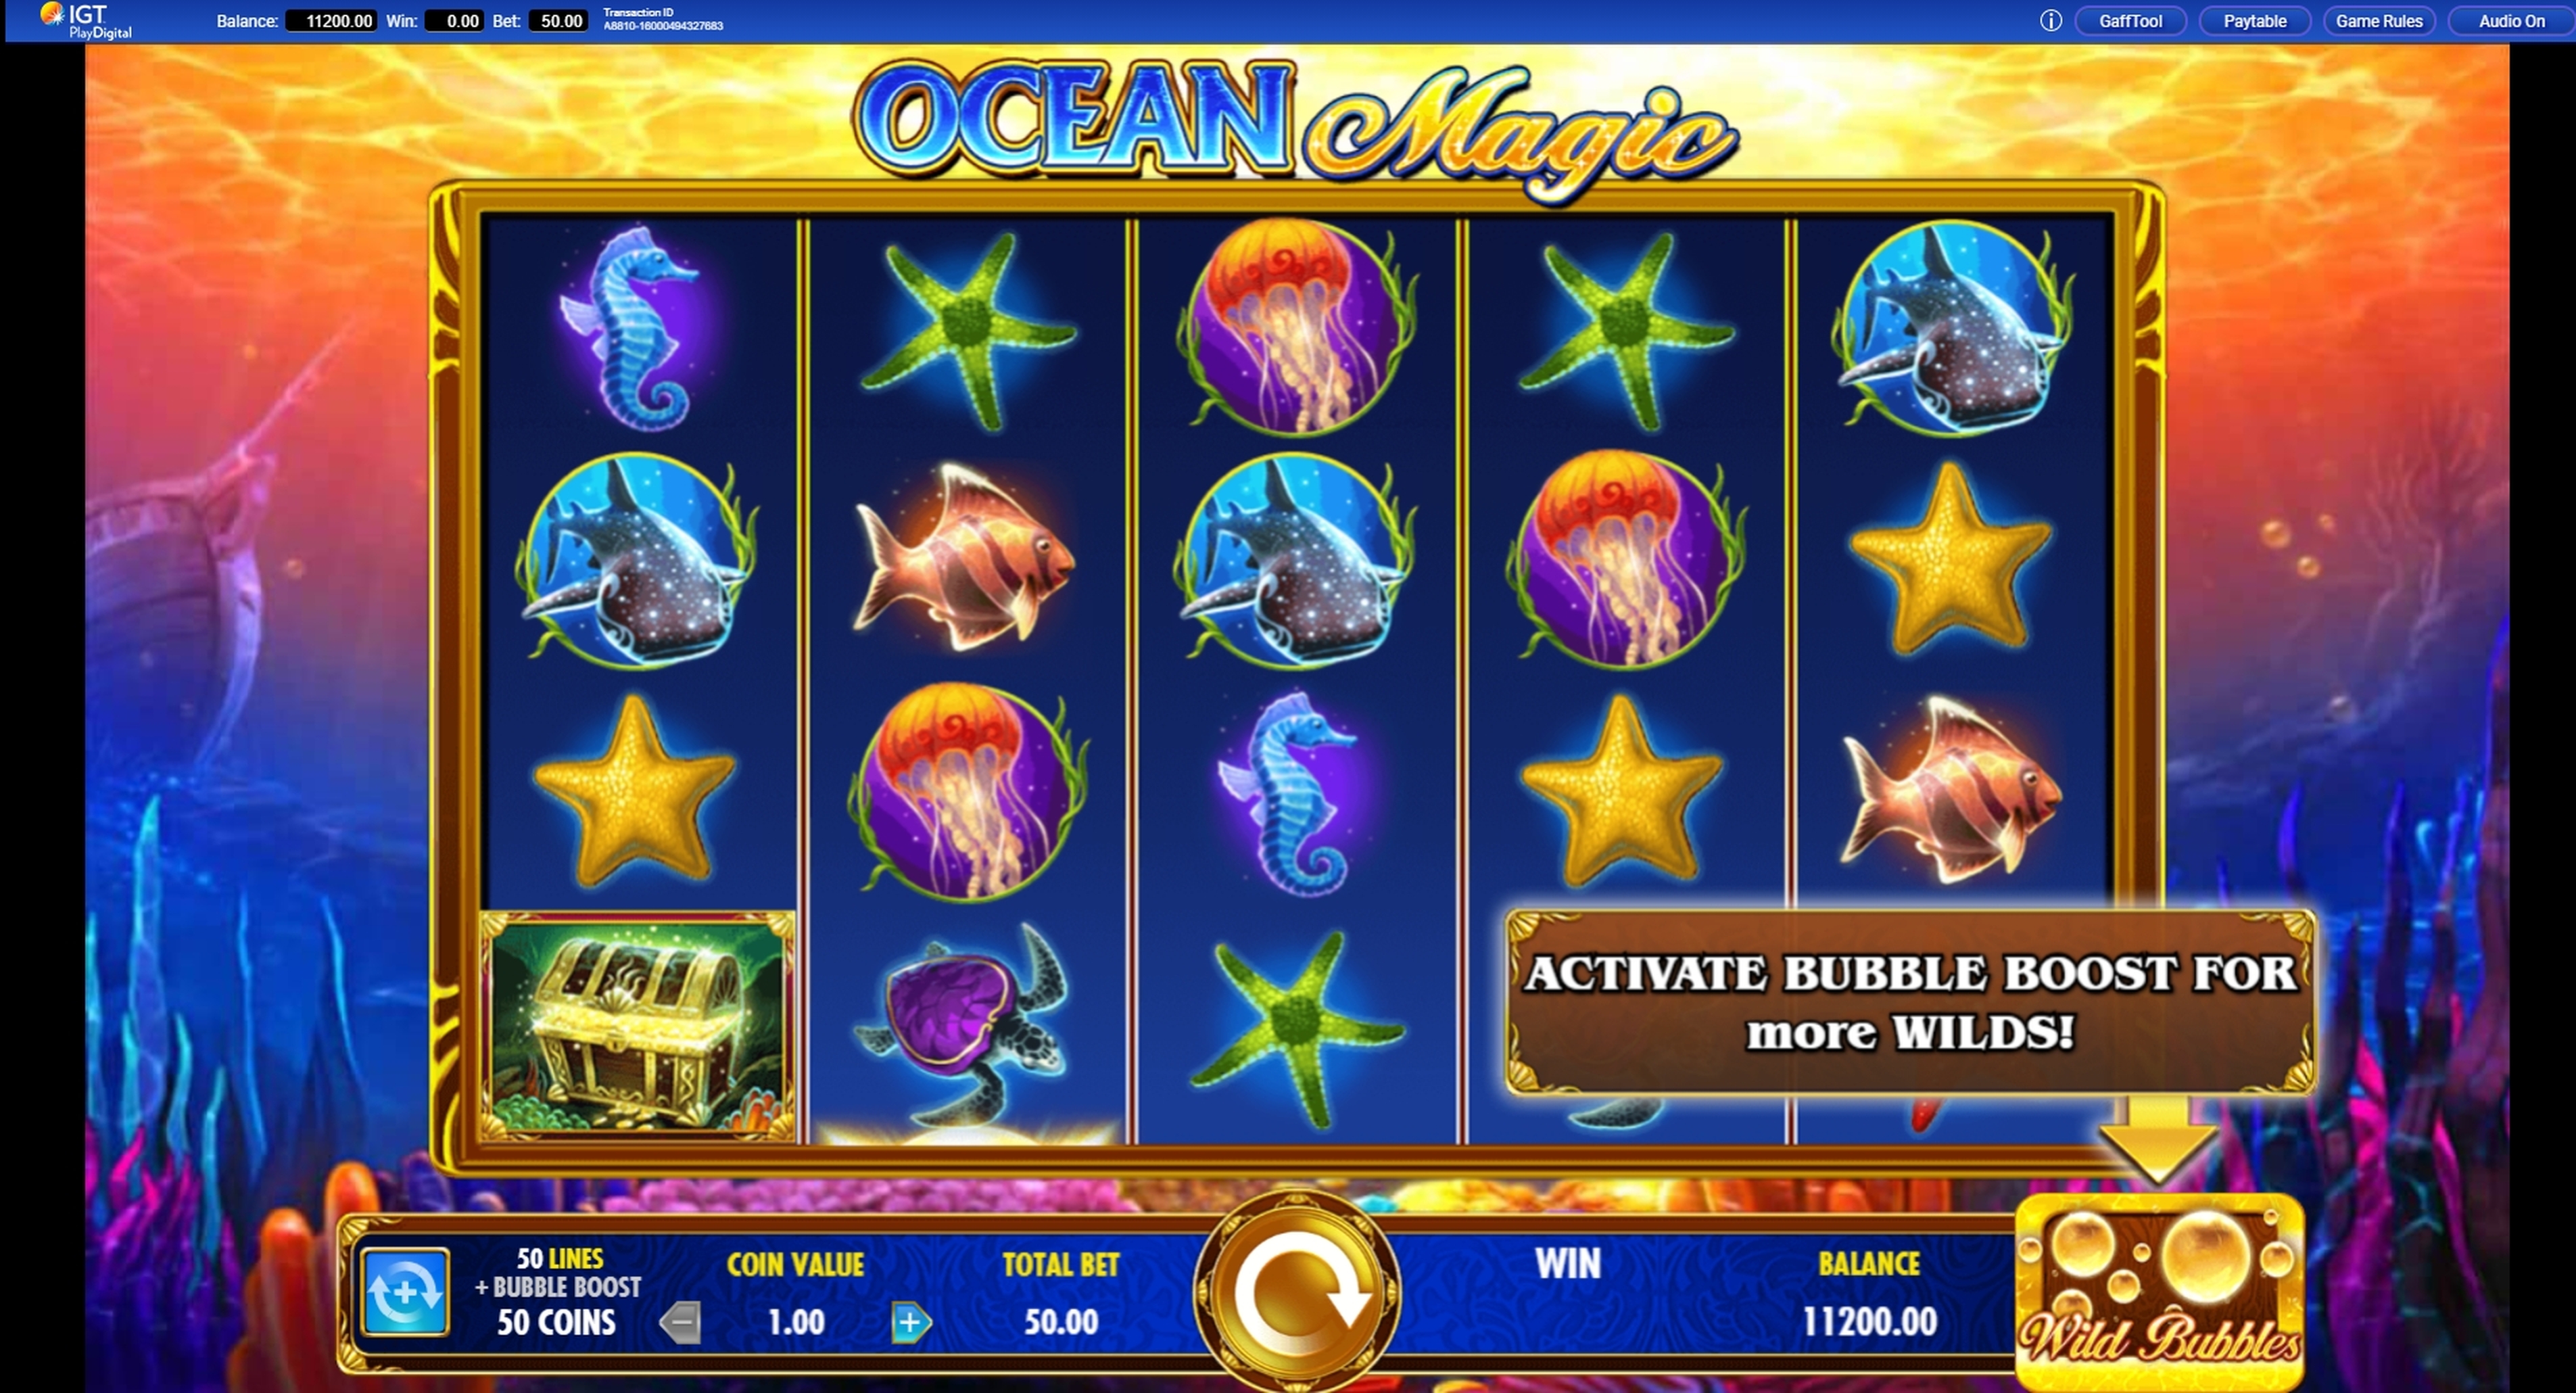 Reels in Ocean Magic Slot Game by IGT